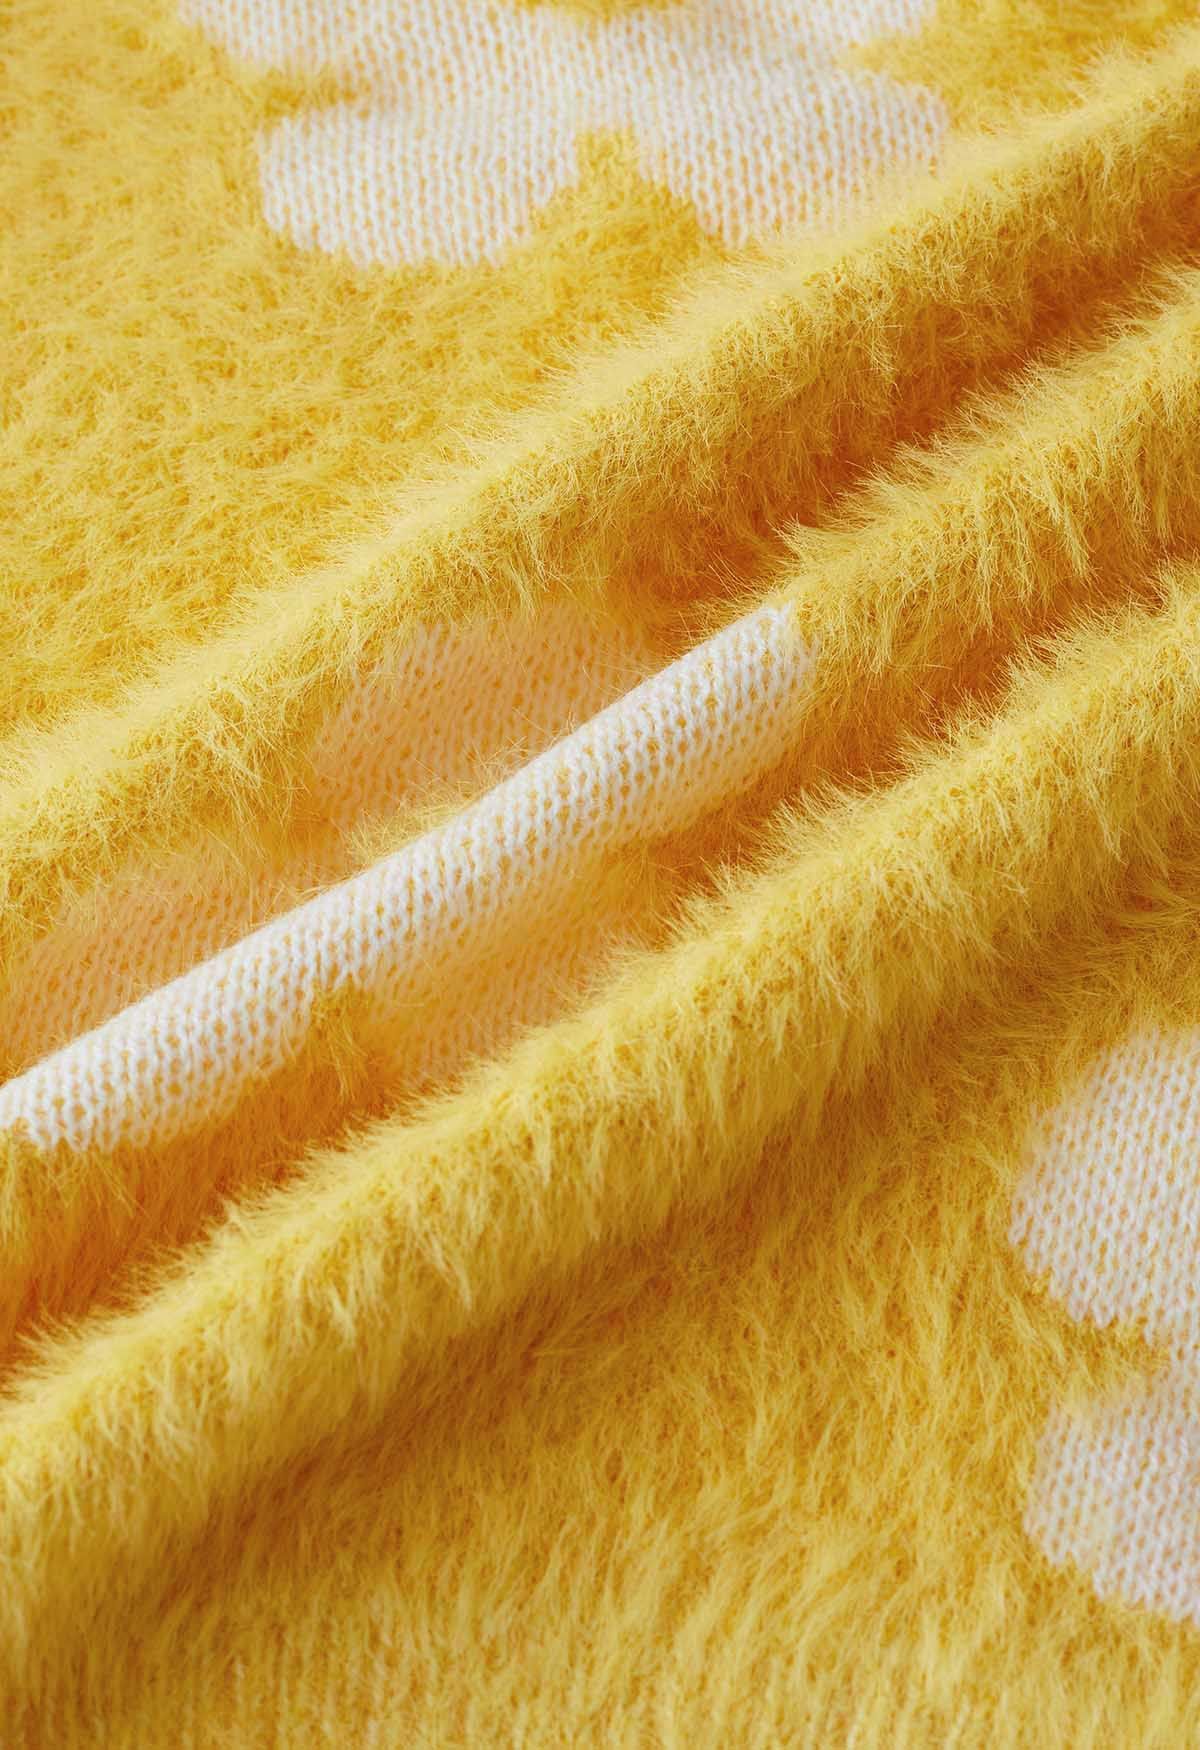 Cardigan en tricot pelucheux à fleurs mignonnes en jaune